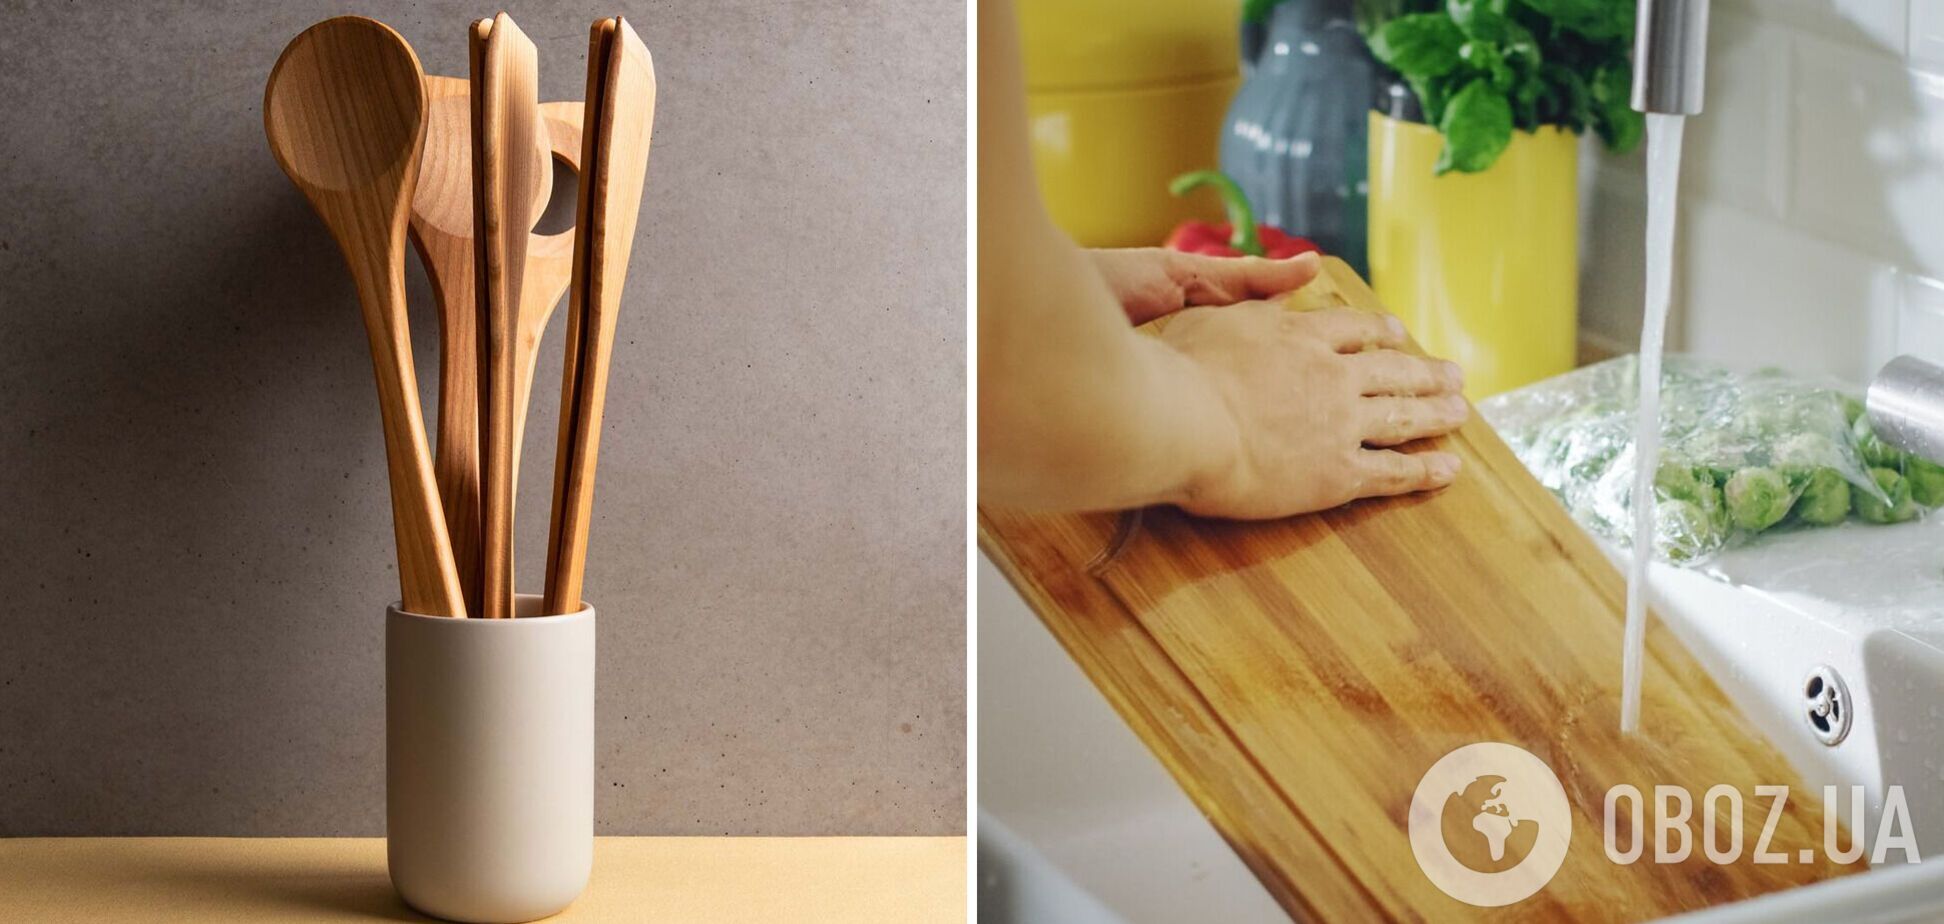 Как мыть деревянные ложки и лопатки, чтобы не было трещин и бактерий: лучшие способы